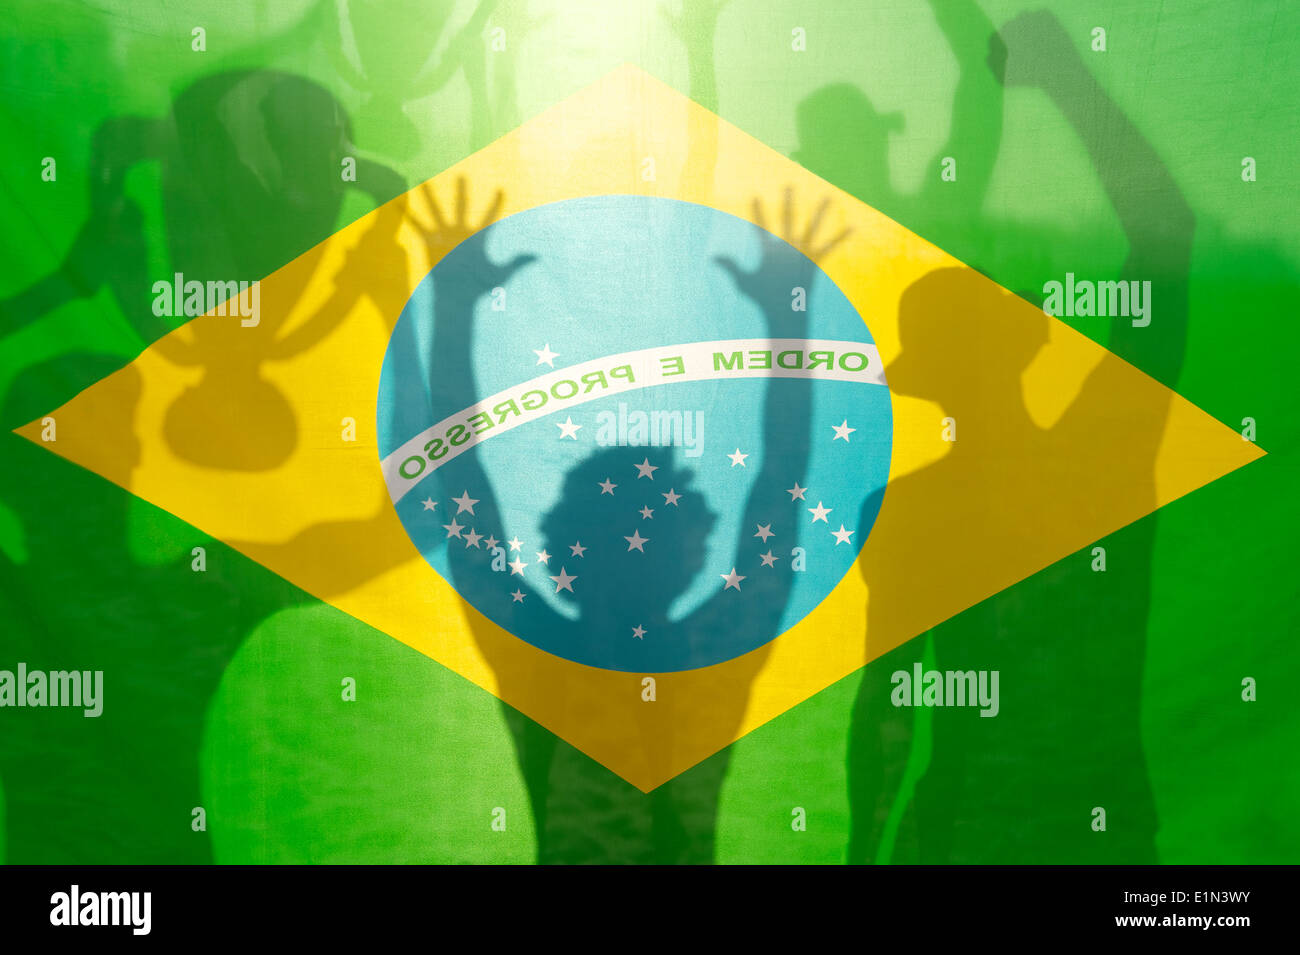 Joueurs de football drapeau brésilien des silhouettes d'ombre célébrant holding trophy gagnante contre le soleil Banque D'Images